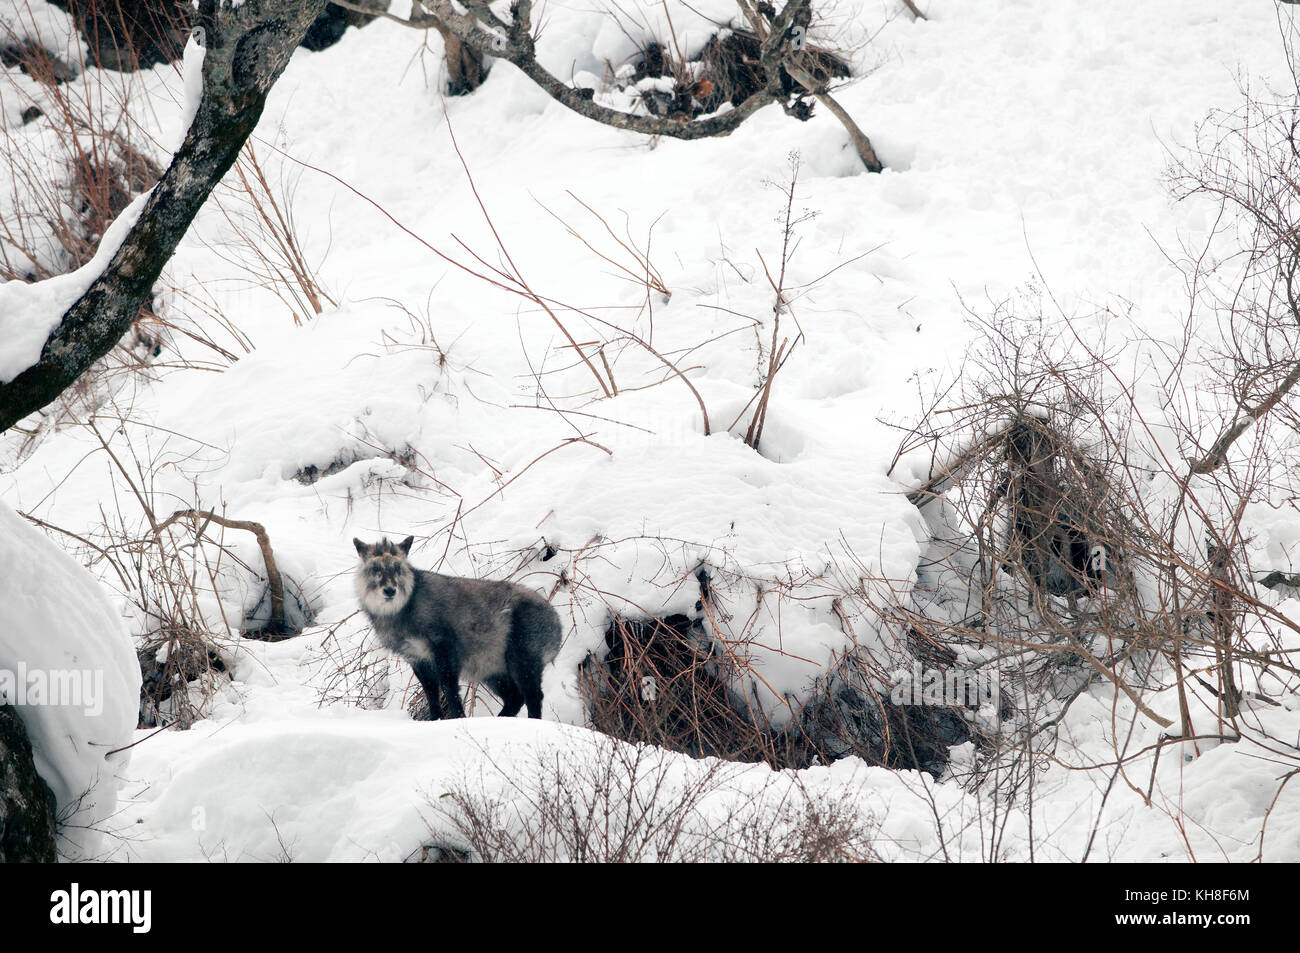 Japanese Serow (Capricornis crispus), Japan *** Local Caption ***  wild animal,wildlife,winter,snow,capricornis crispus Stock Photo